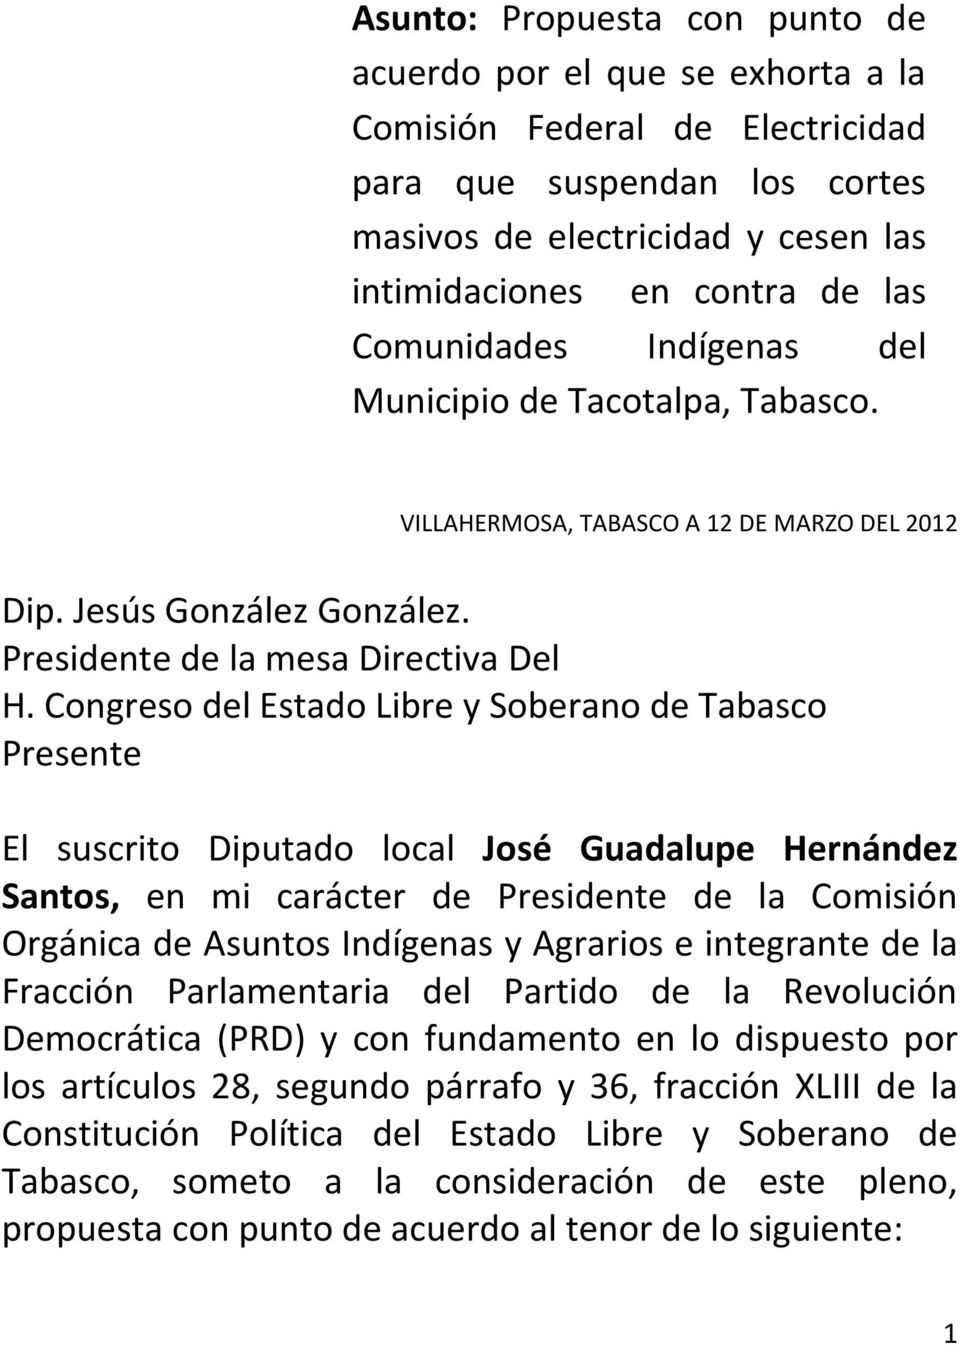 Congreso del Estado Libre y Soberano de Tabasco Presente El suscrito Diputado local José Guadalupe Hernández Santos, en mi carácter de Presidente de la Comisión Orgánica de Asuntos Indígenas y